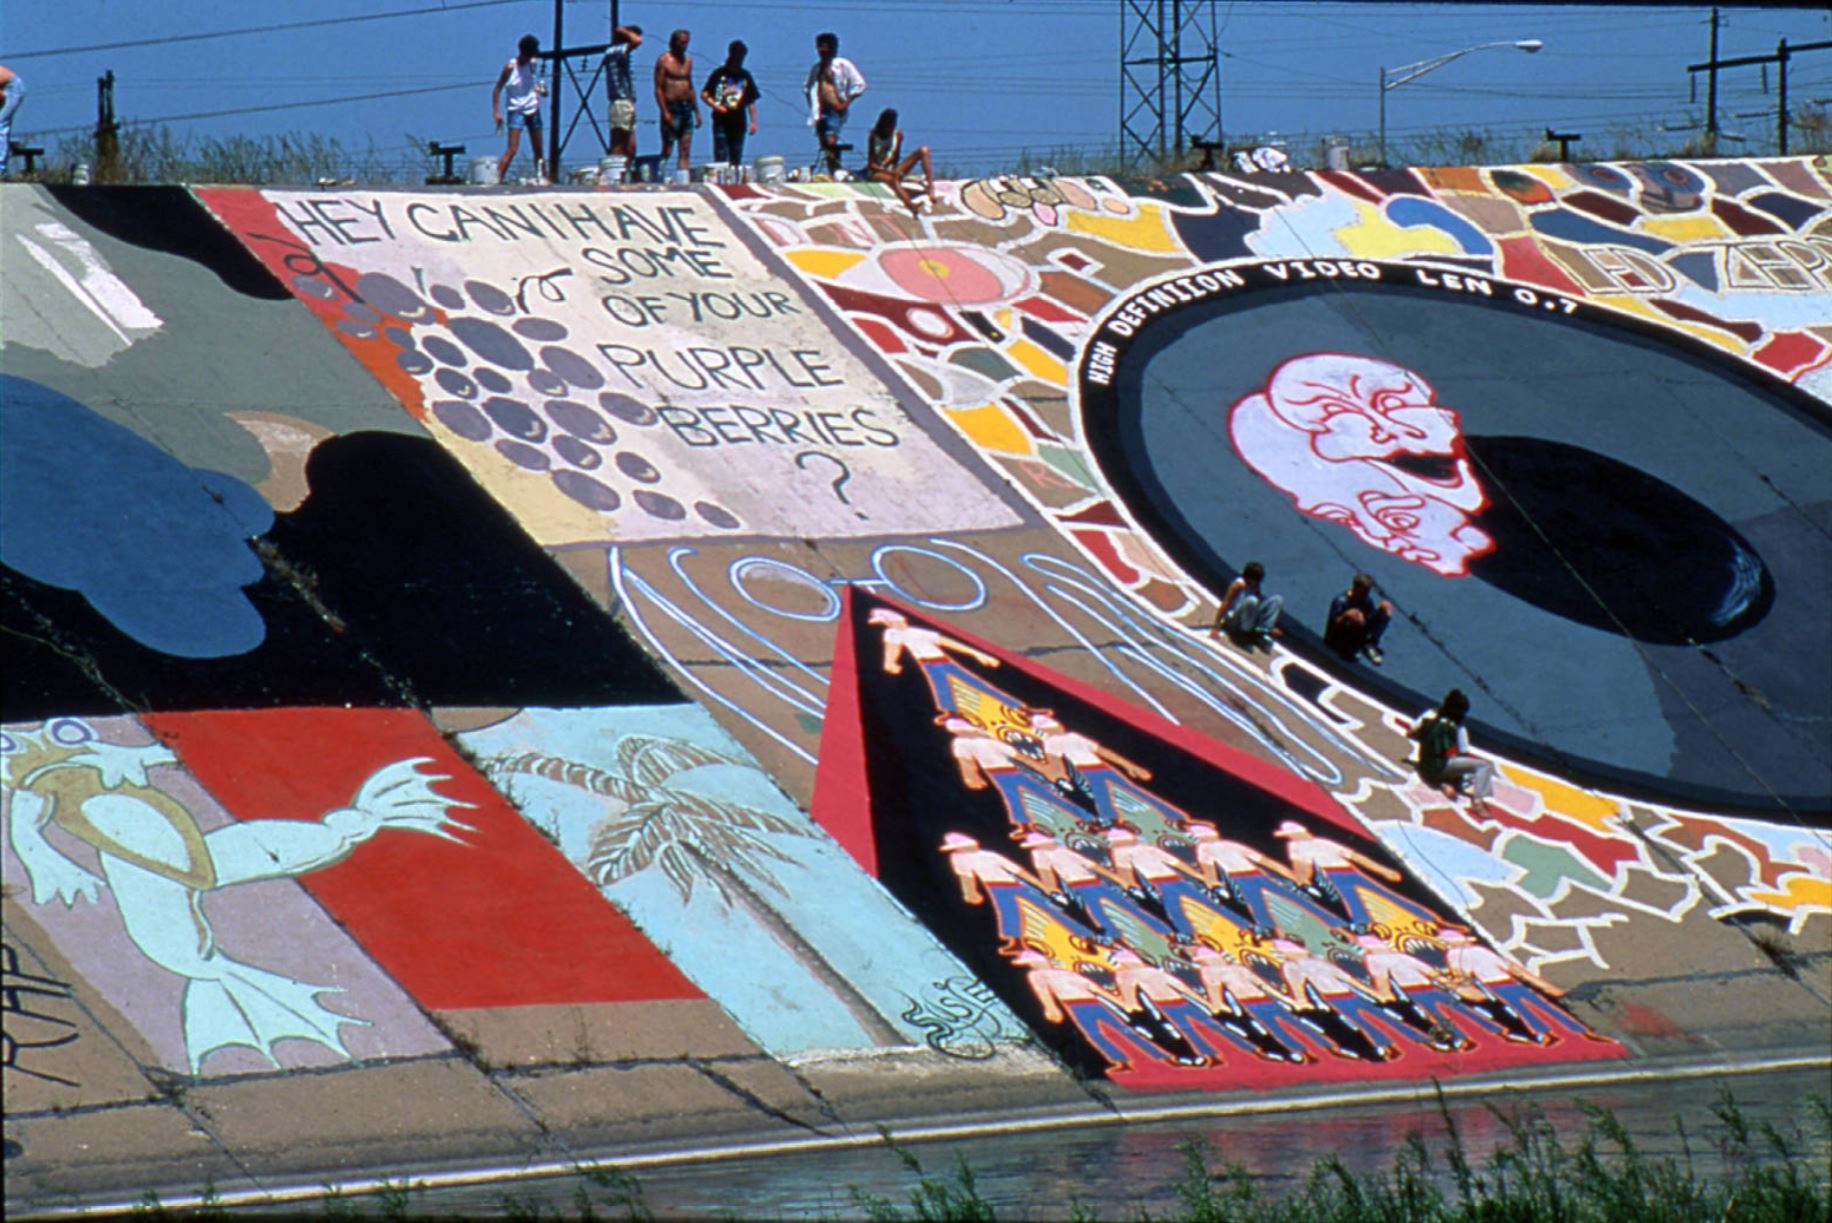 Pueblo Levee mural being painted, 1980s